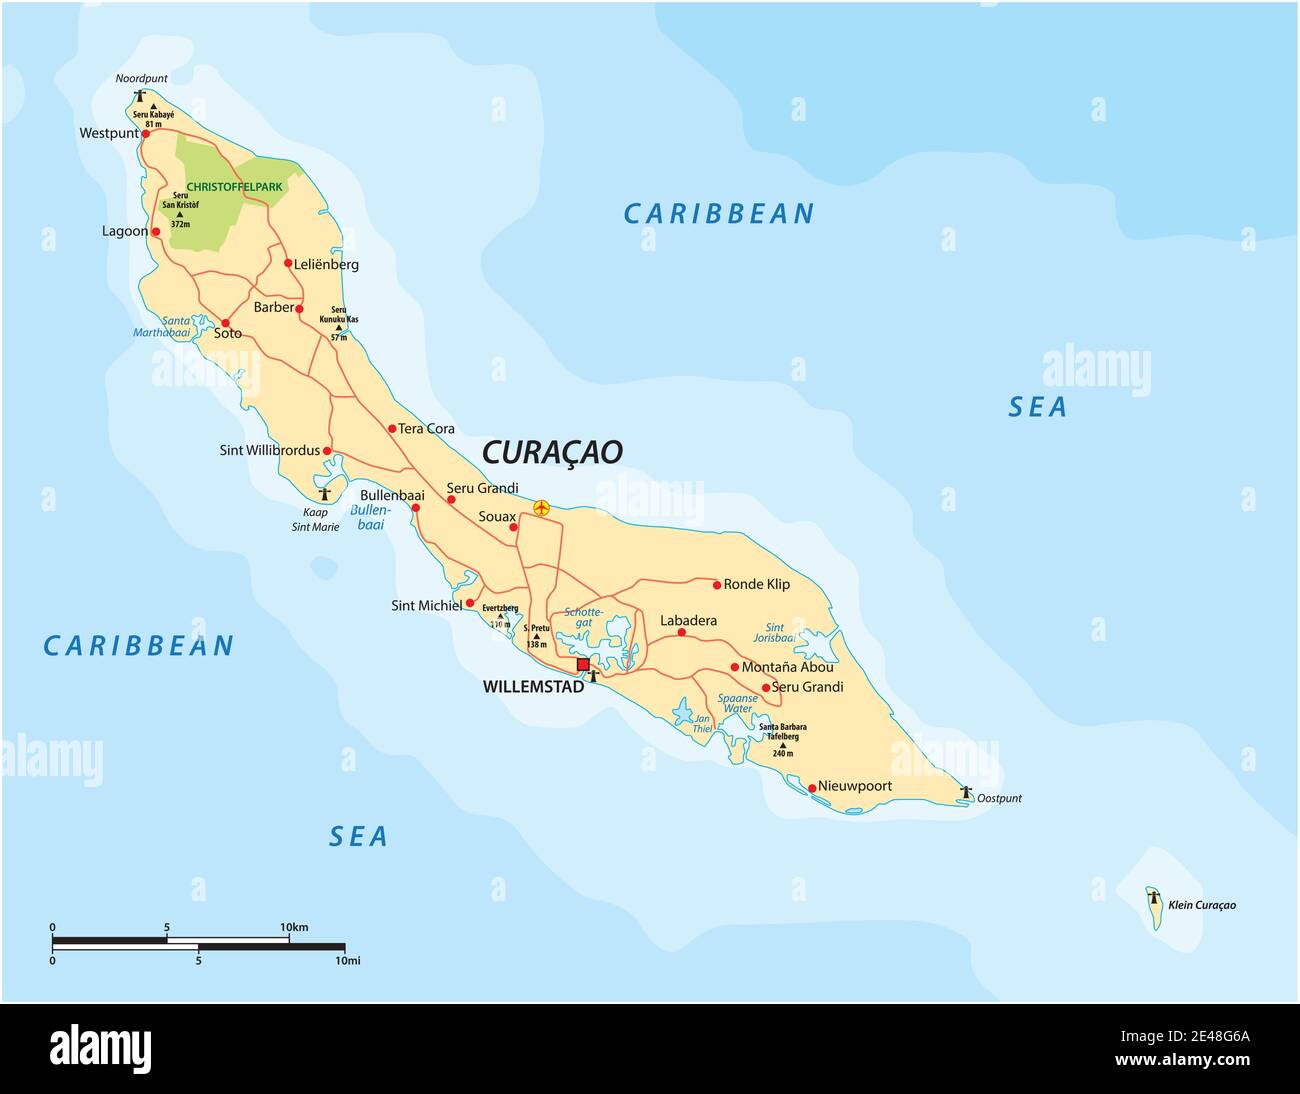 Carte routière vectorielle de l'île ABC des Caraïbes de Curaçao Illustration de Vecteur